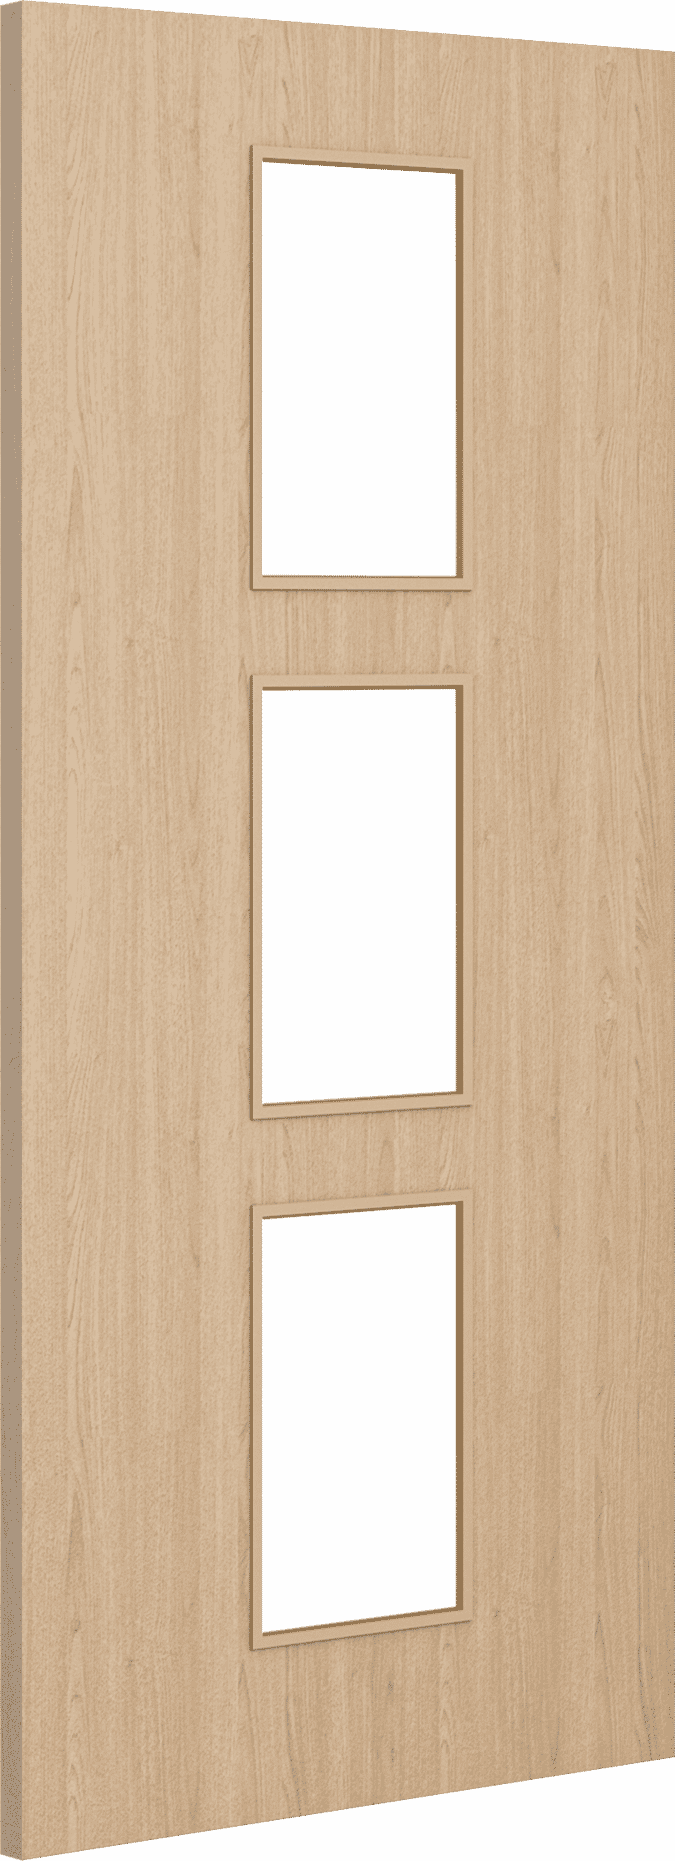 1981mm x 762mm x 44mm (30") Architectural Oak 11 Clear Glazed - Prefinished FD30 Fire Door Blank